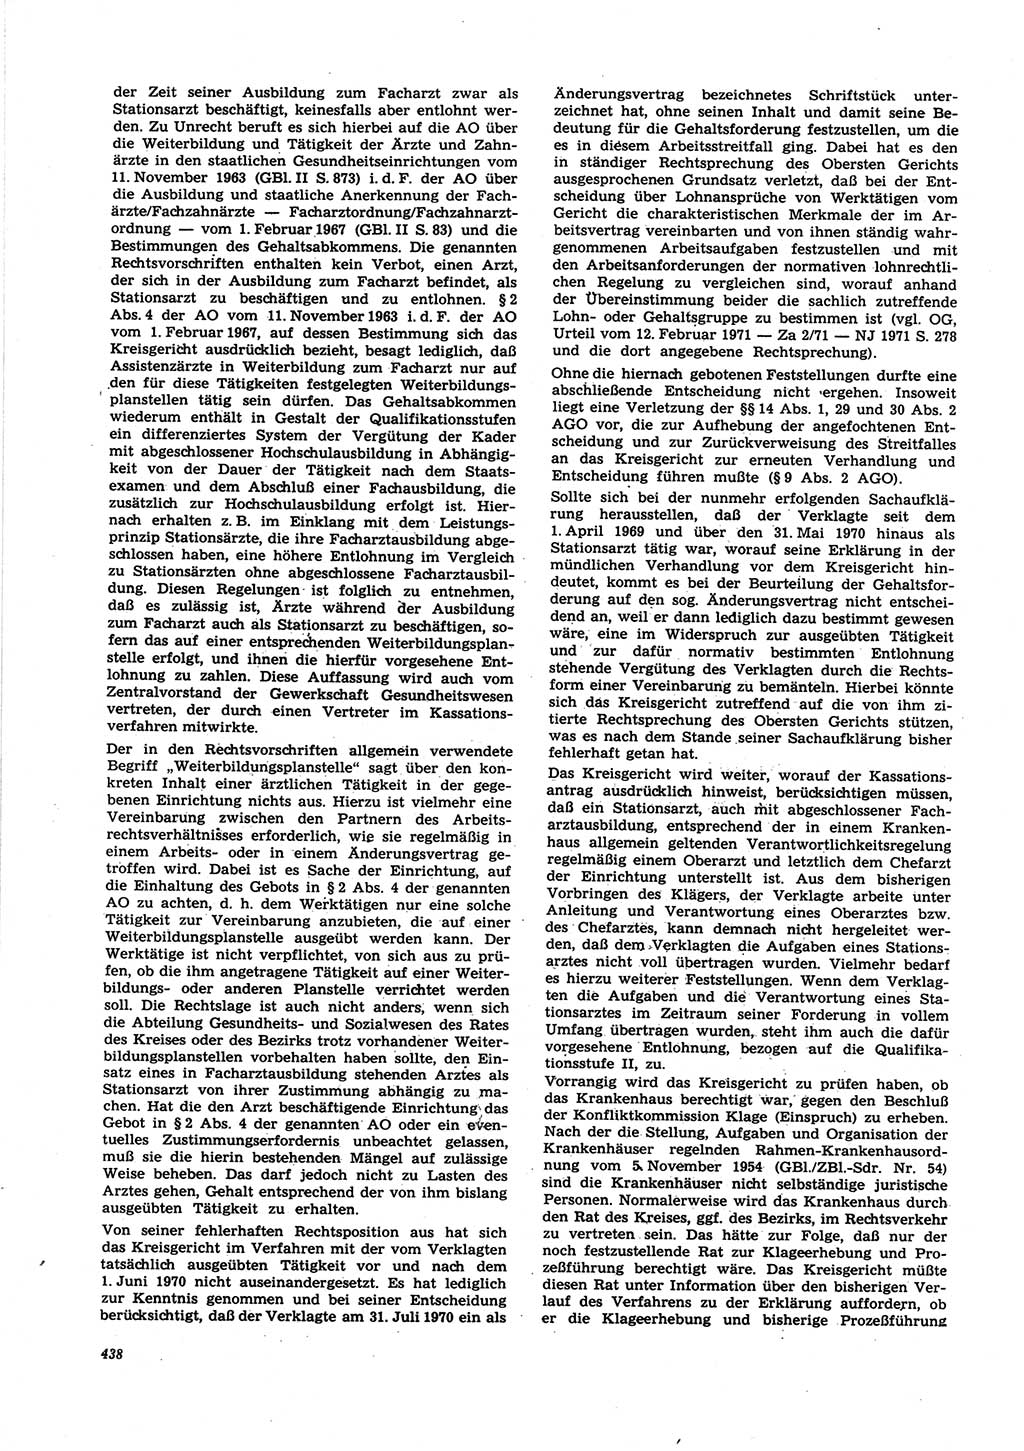 Neue Justiz (NJ), Zeitschrift für Recht und Rechtswissenschaft [Deutsche Demokratische Republik (DDR)], 25. Jahrgang 1971, Seite 438 (NJ DDR 1971, S. 438)